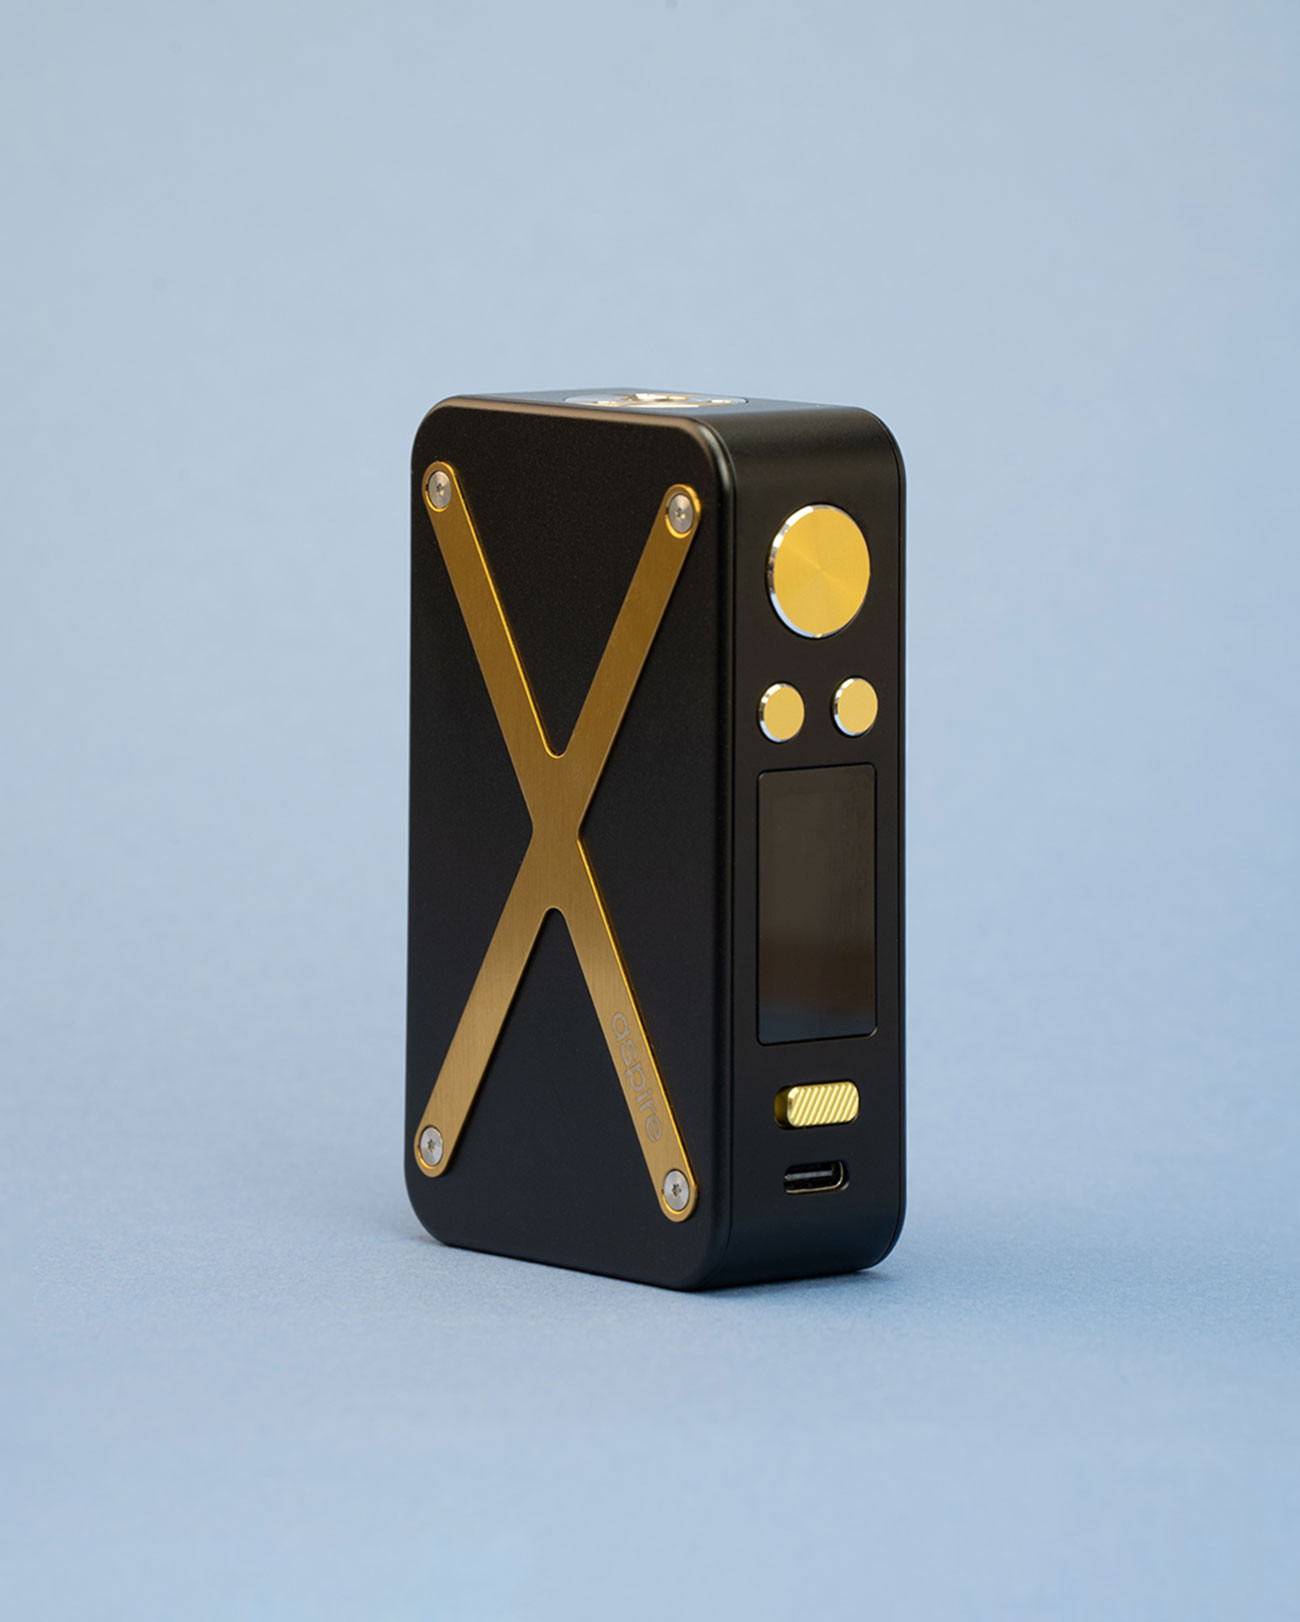 Box aspire Revolto black gold or et noir format rectangulaire